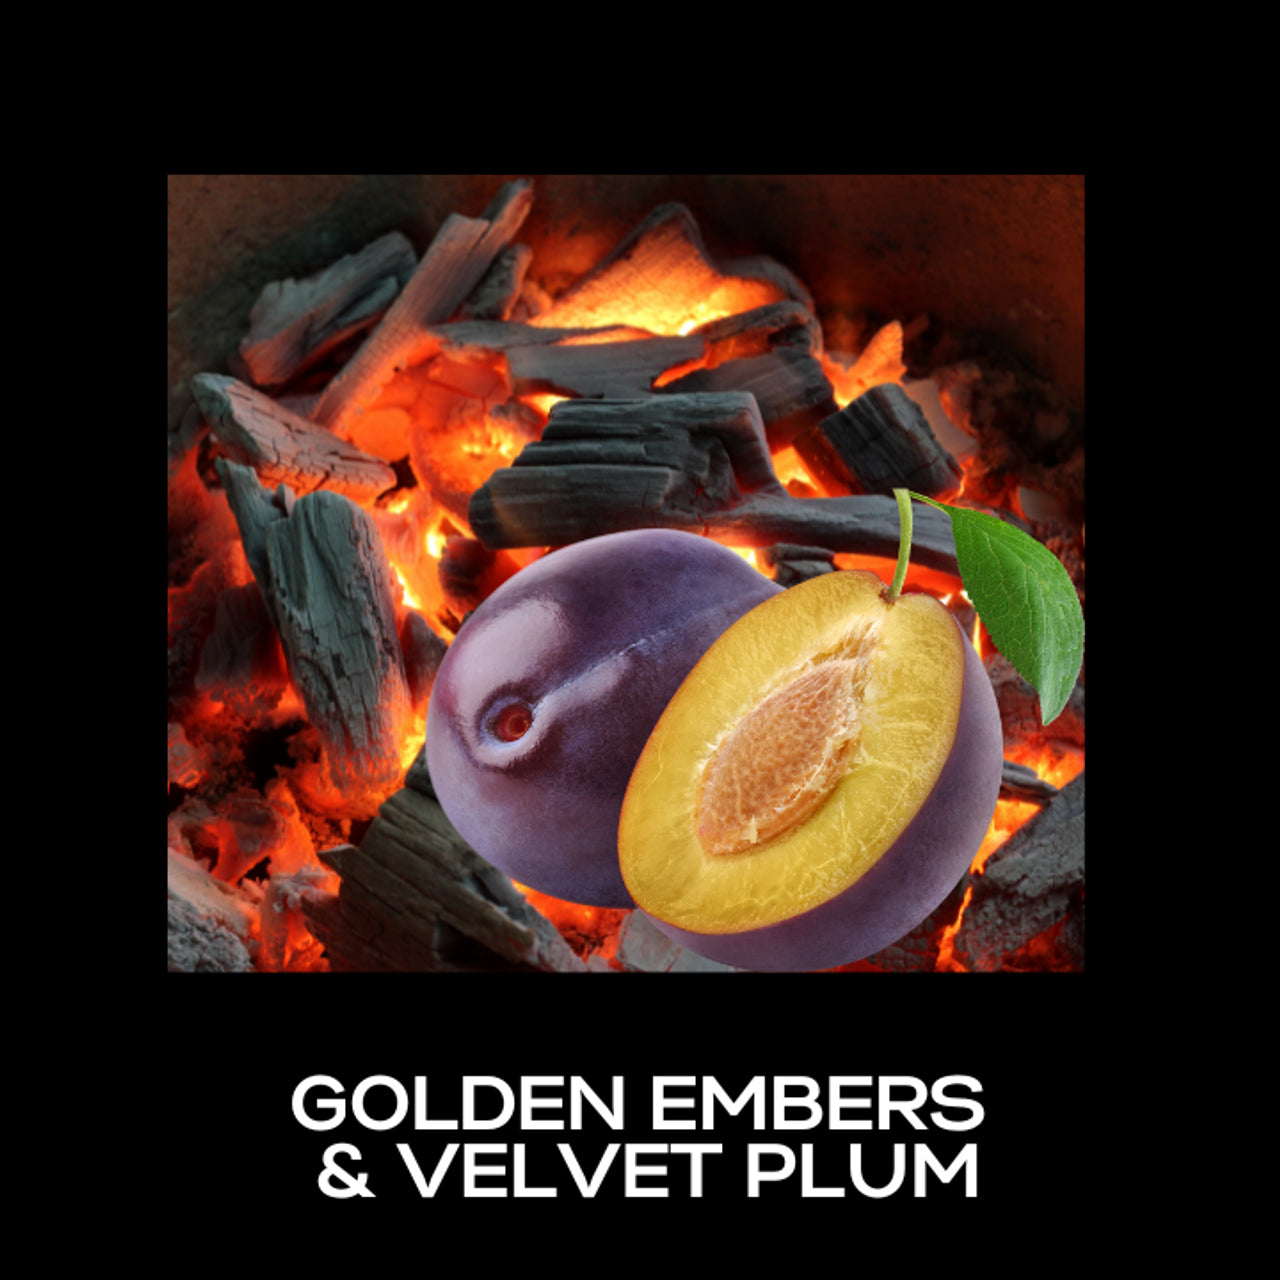 Golden Embers & Velvet Plum Fragrance Oil